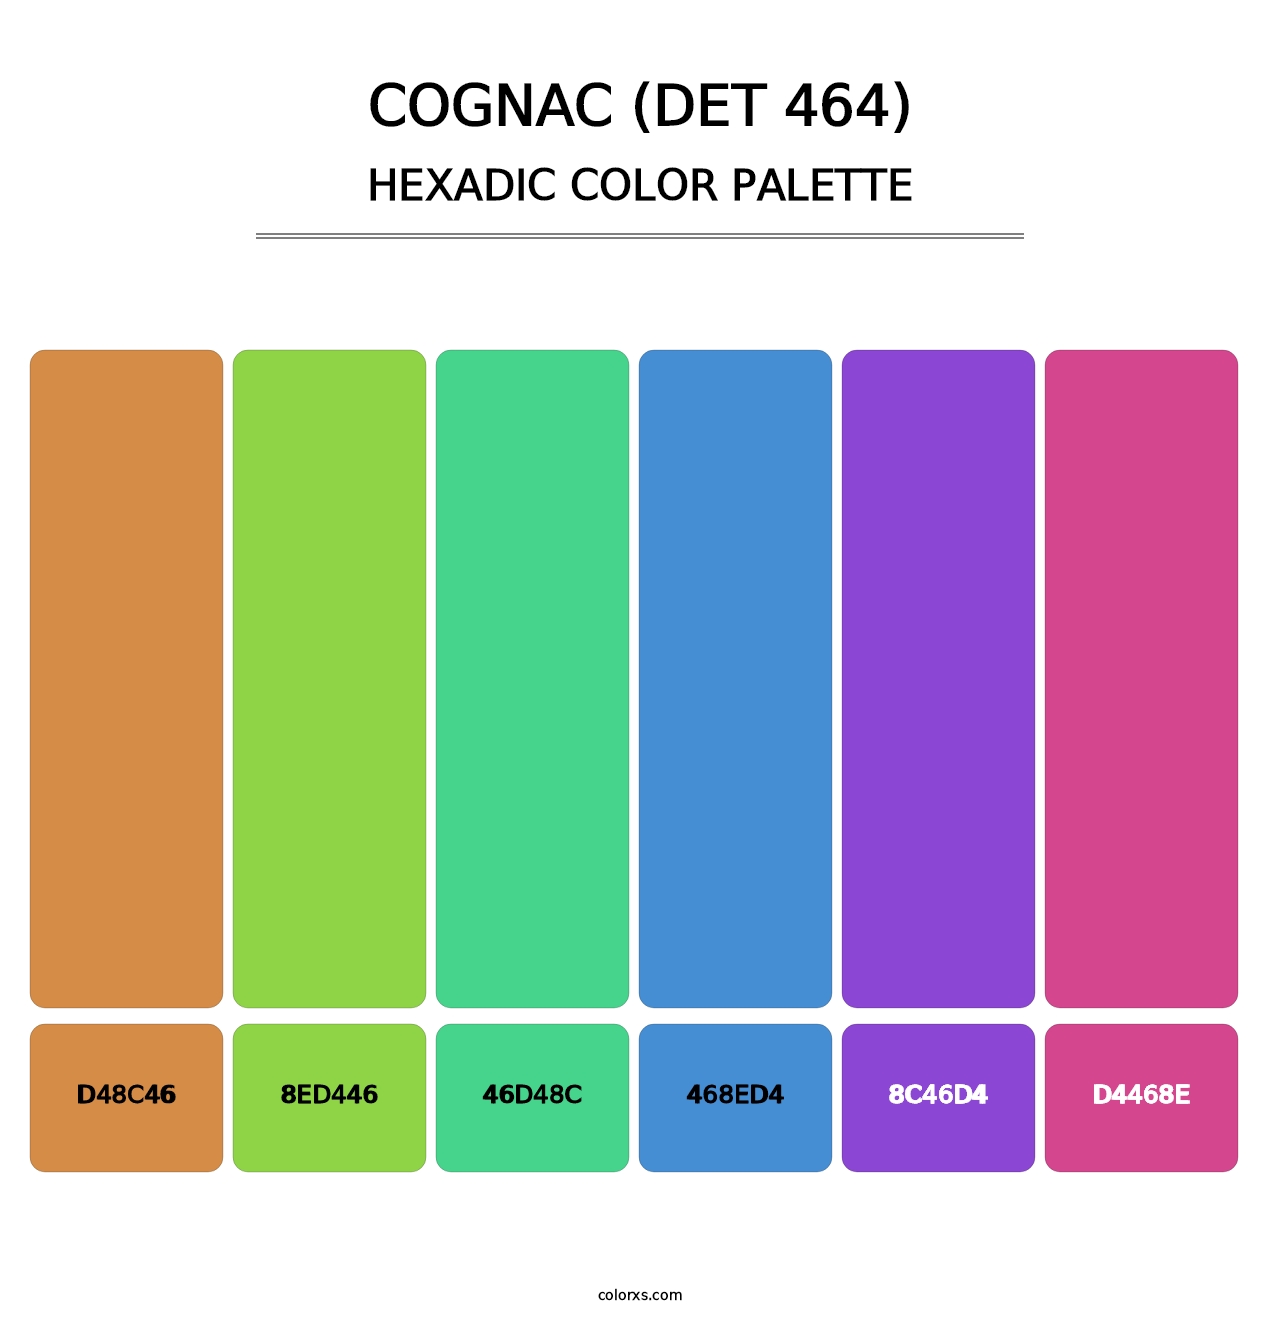 Cognac (DET 464) - Hexadic Color Palette